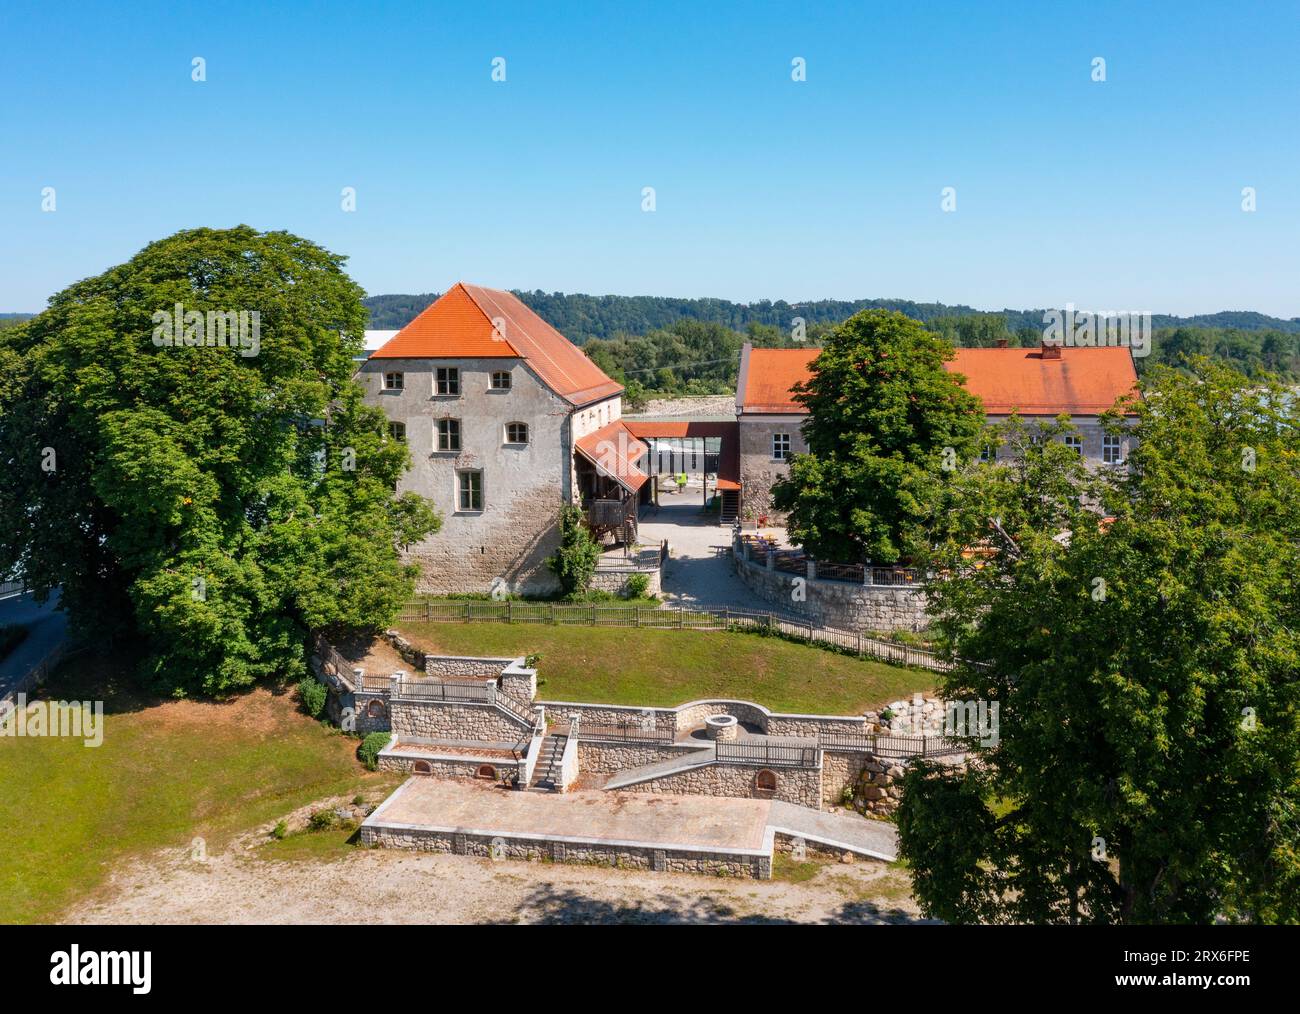 Austria, Upper Austria, Mining, Drone view of Frauenstein Castle in summer Stock Photo